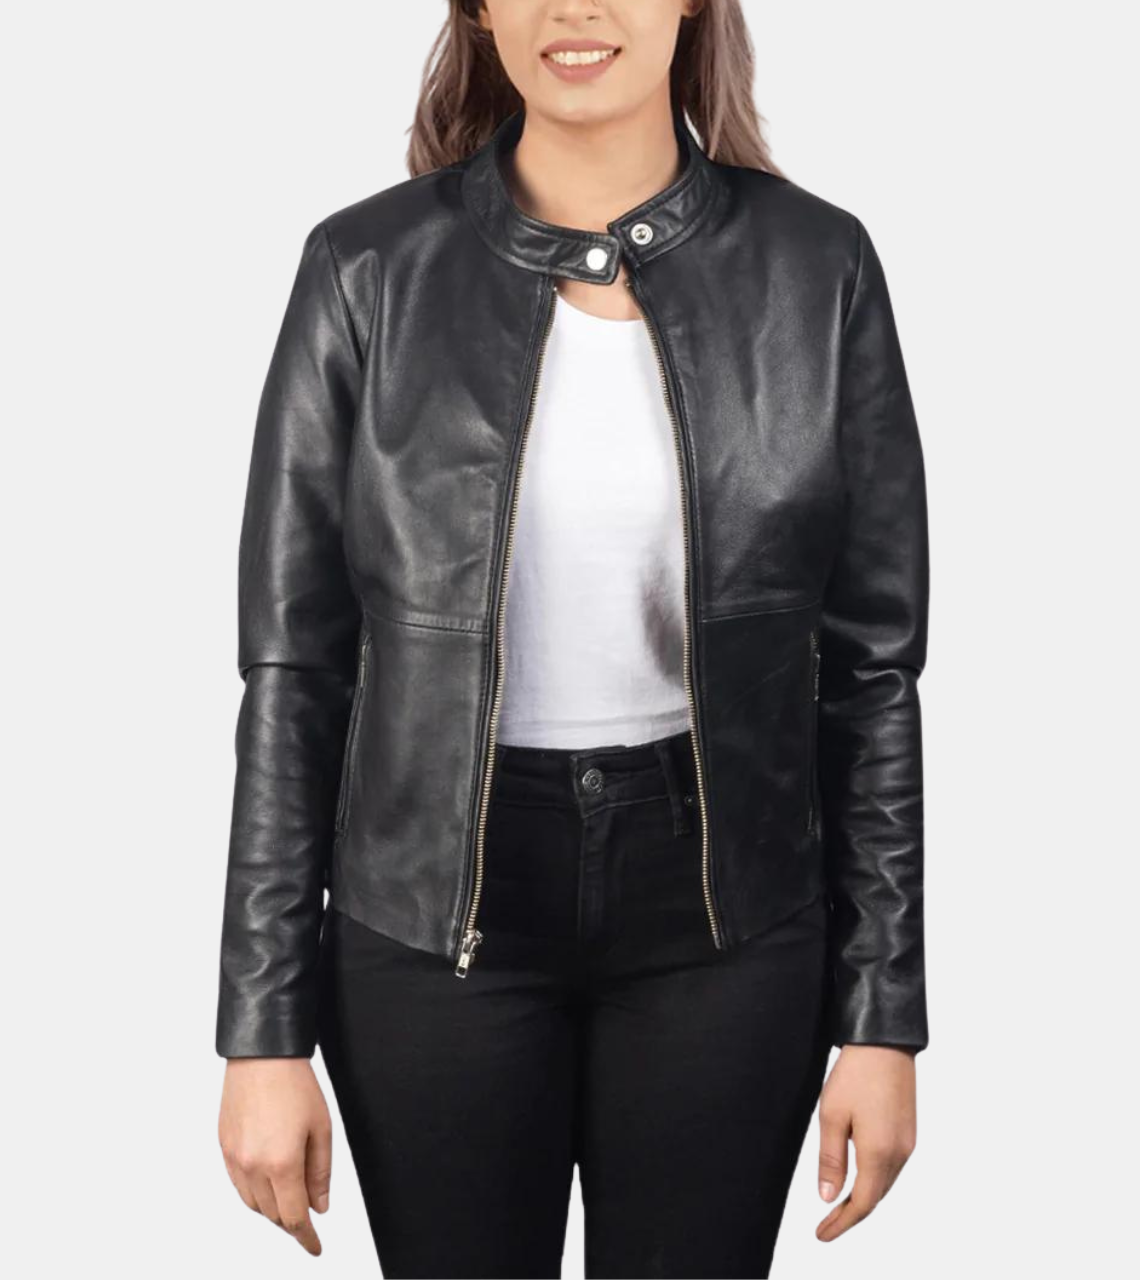 Evane Women's Black Leather Jacket